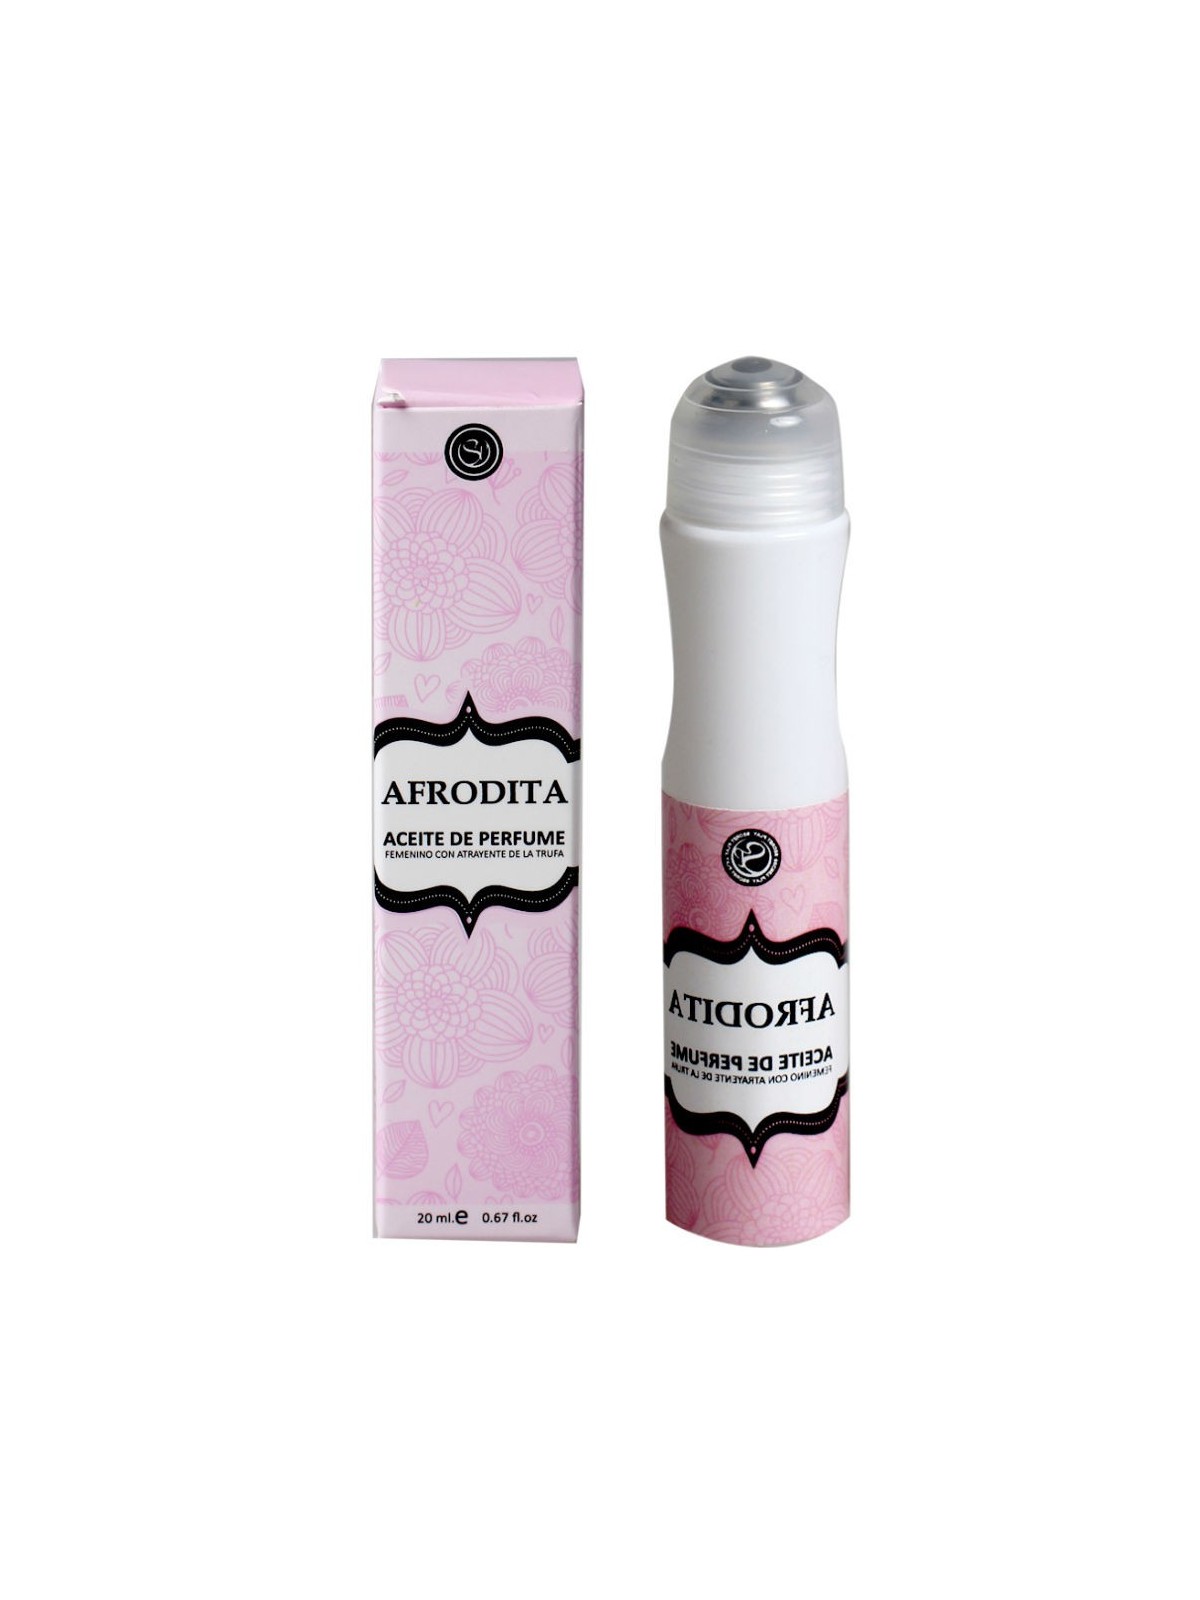 Secretplay Perfume En Aceite Afrodita - Comprar Perfume feromona Secretplay - Perfumes con feromonas (1)